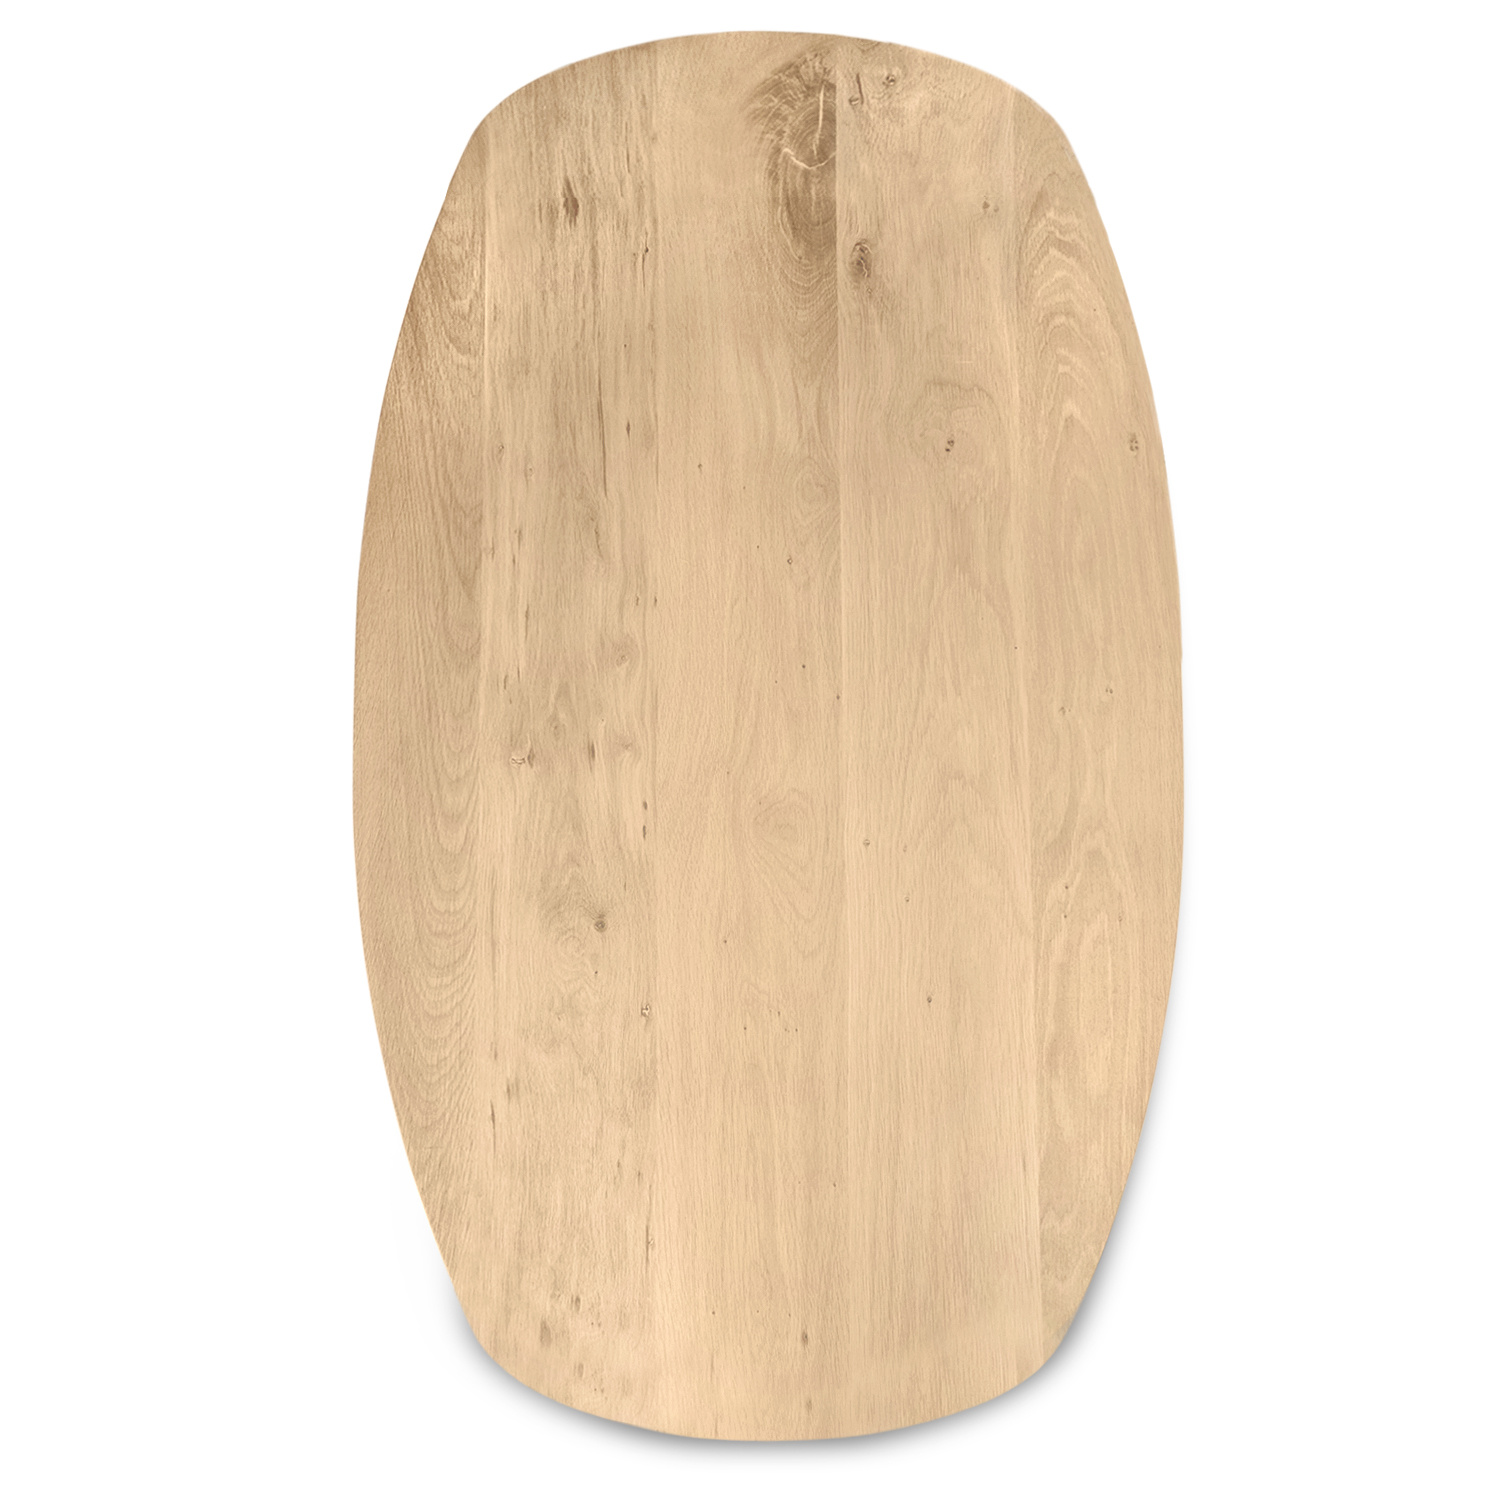  Deens ovaal eiken tafelblad op maat - 4 cm dik (1-laag) - extra rustiek Europees eikenhout - met extra brede lamellen (circa 14-20 cm)nhout - verlijmd kd 8-12% - 40-117x80-247 cm